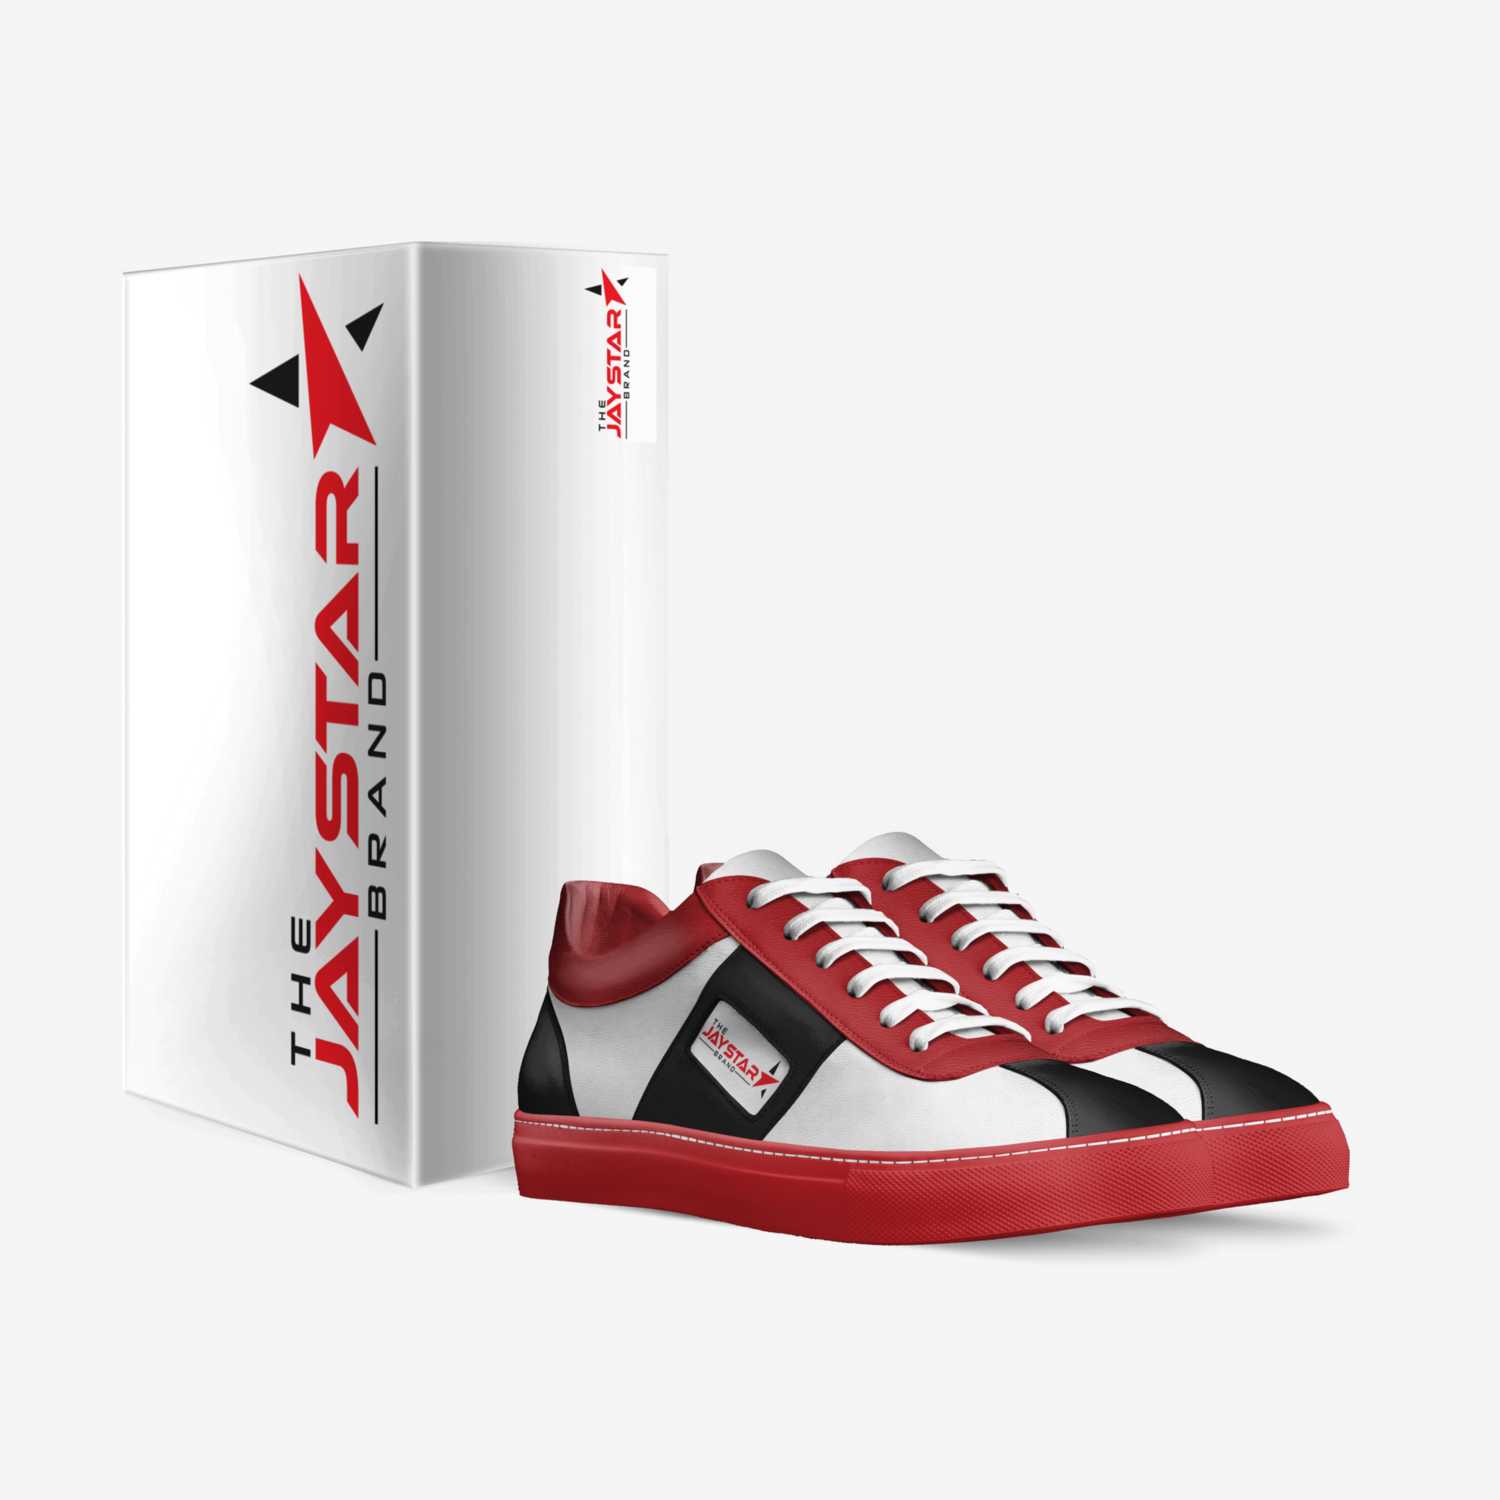 Jaystar's custom made in Italy shoes by Johnny Jarrett | Box view